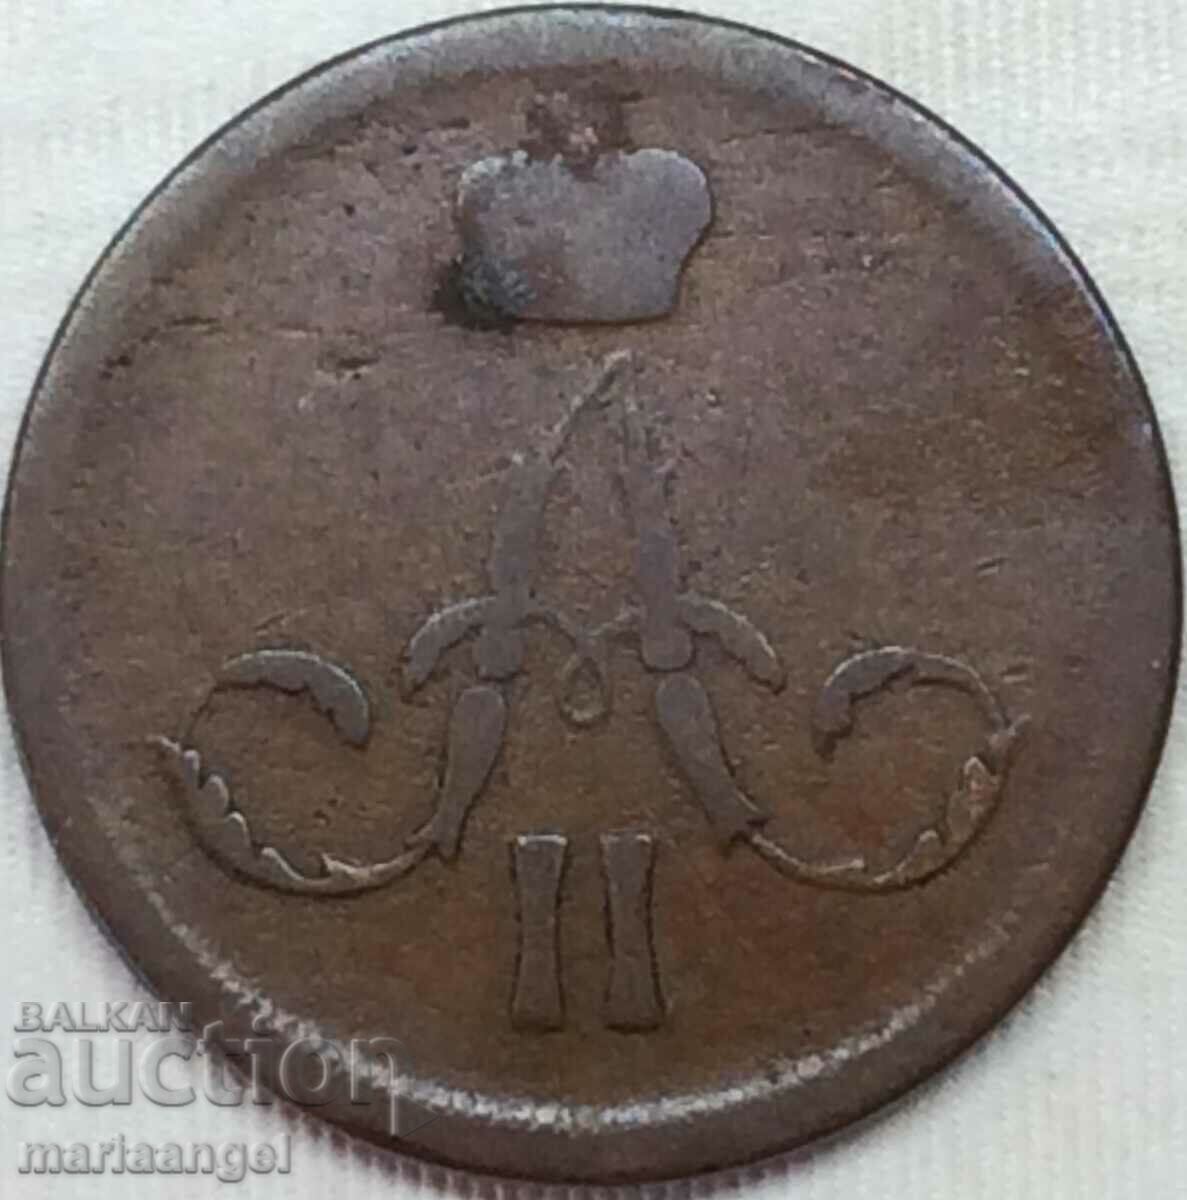 1 kopeck 1861 Russia Alexander II - monogram copper